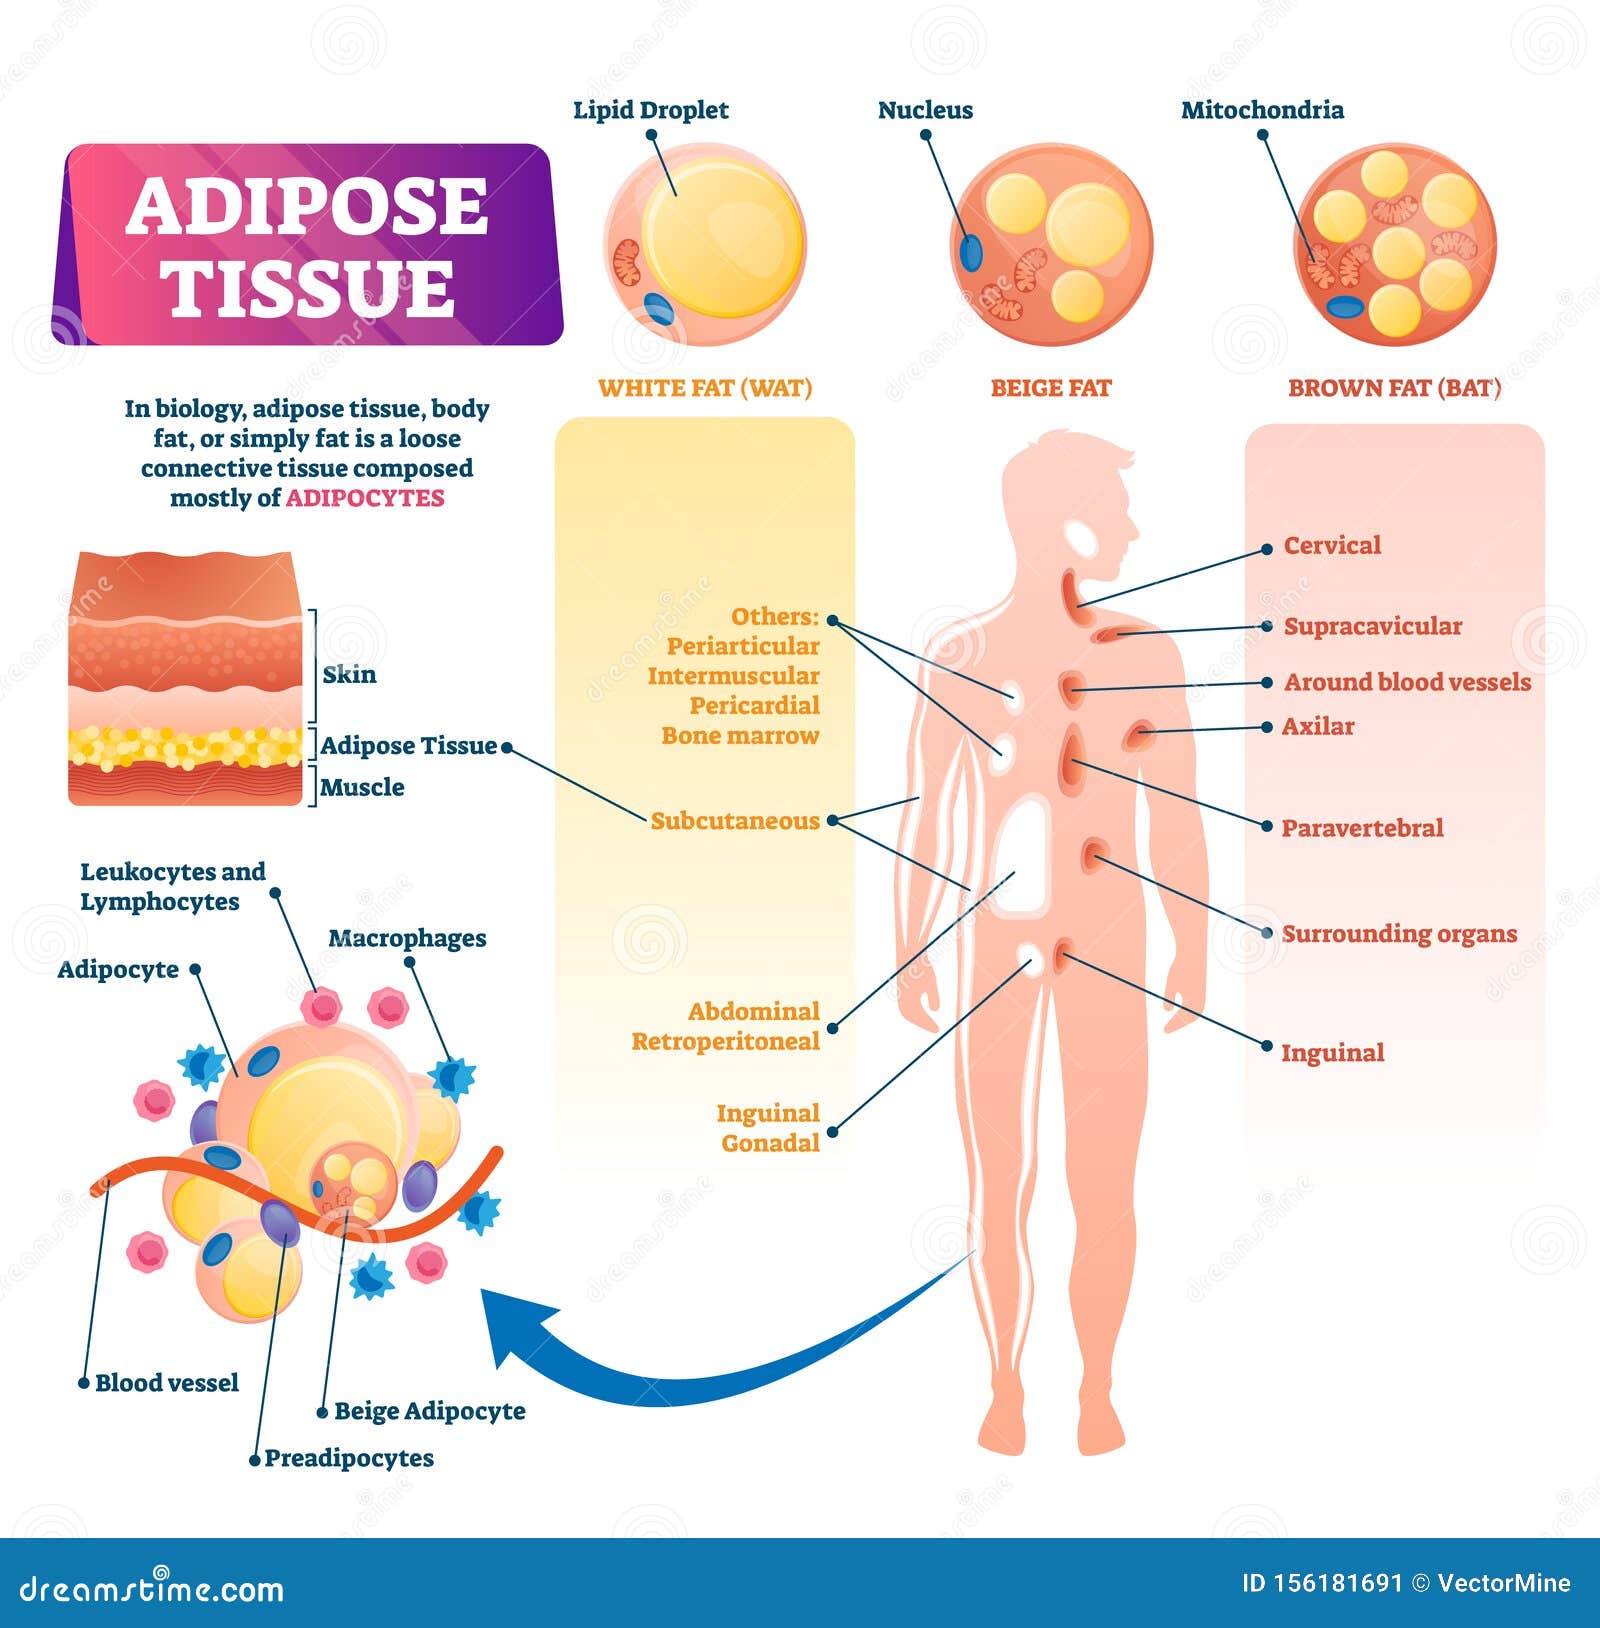 Adipose tissue of Fat/fatty tissue